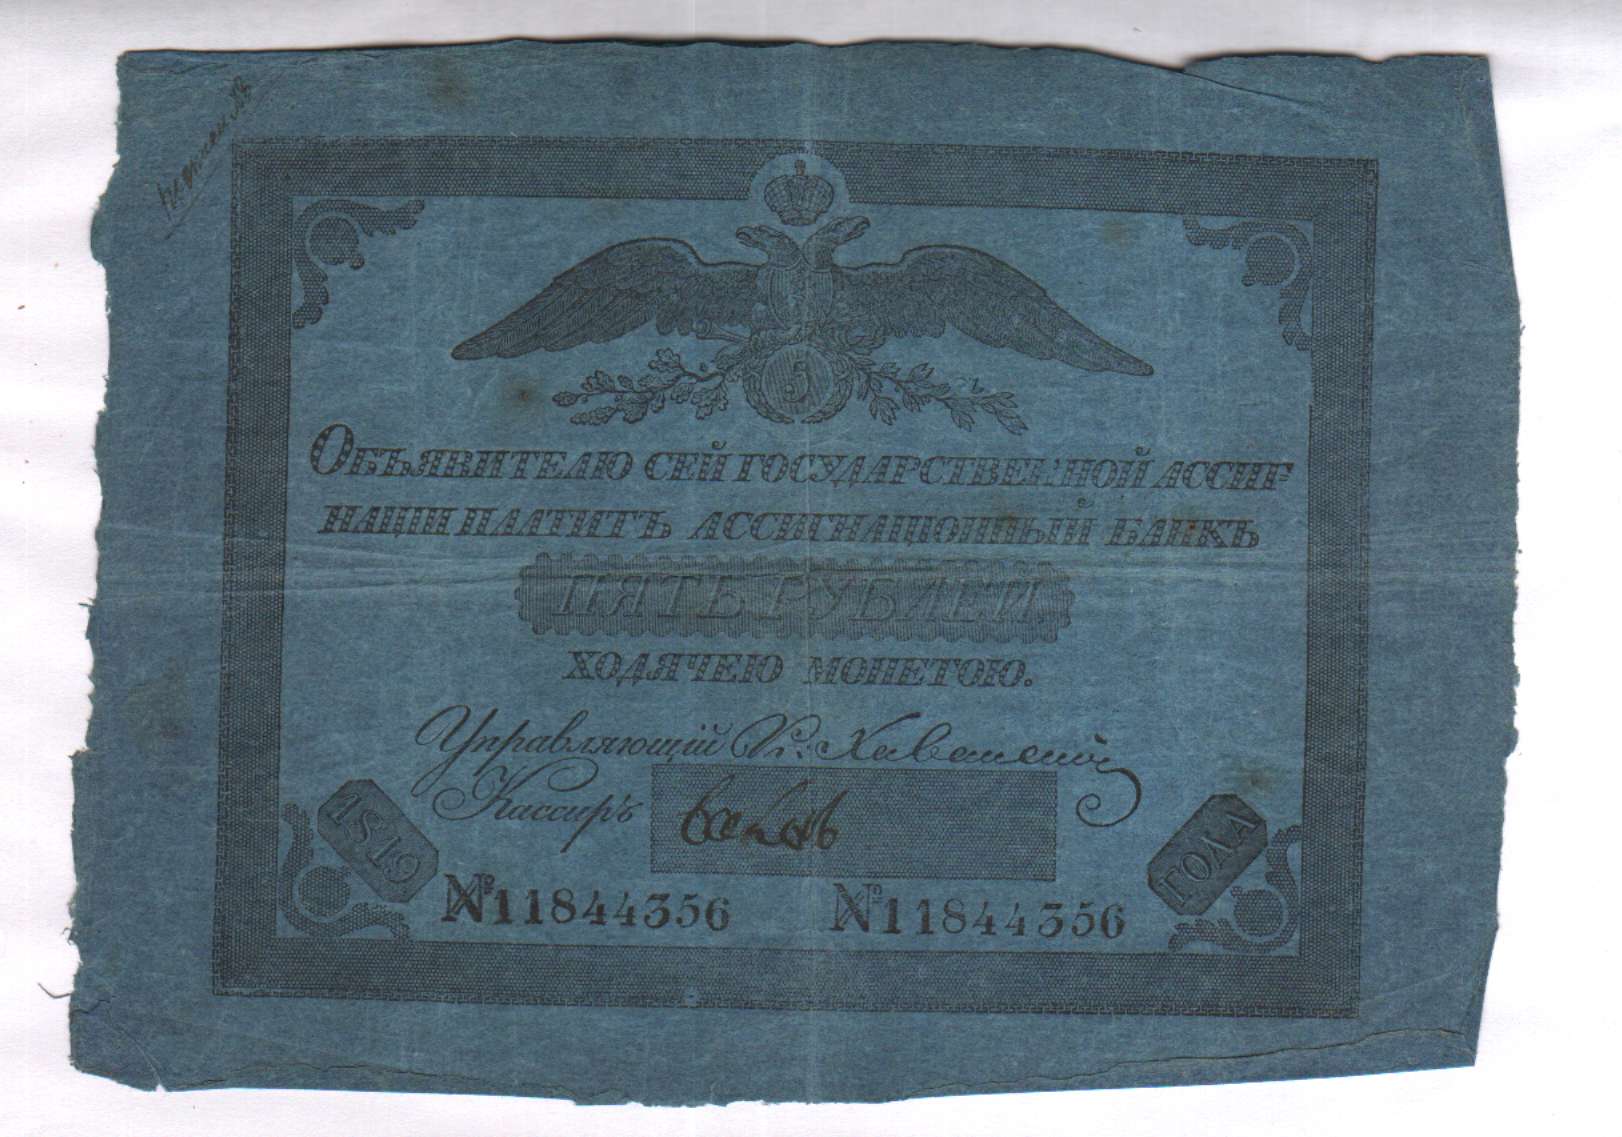 100 рублей 1807 года фото